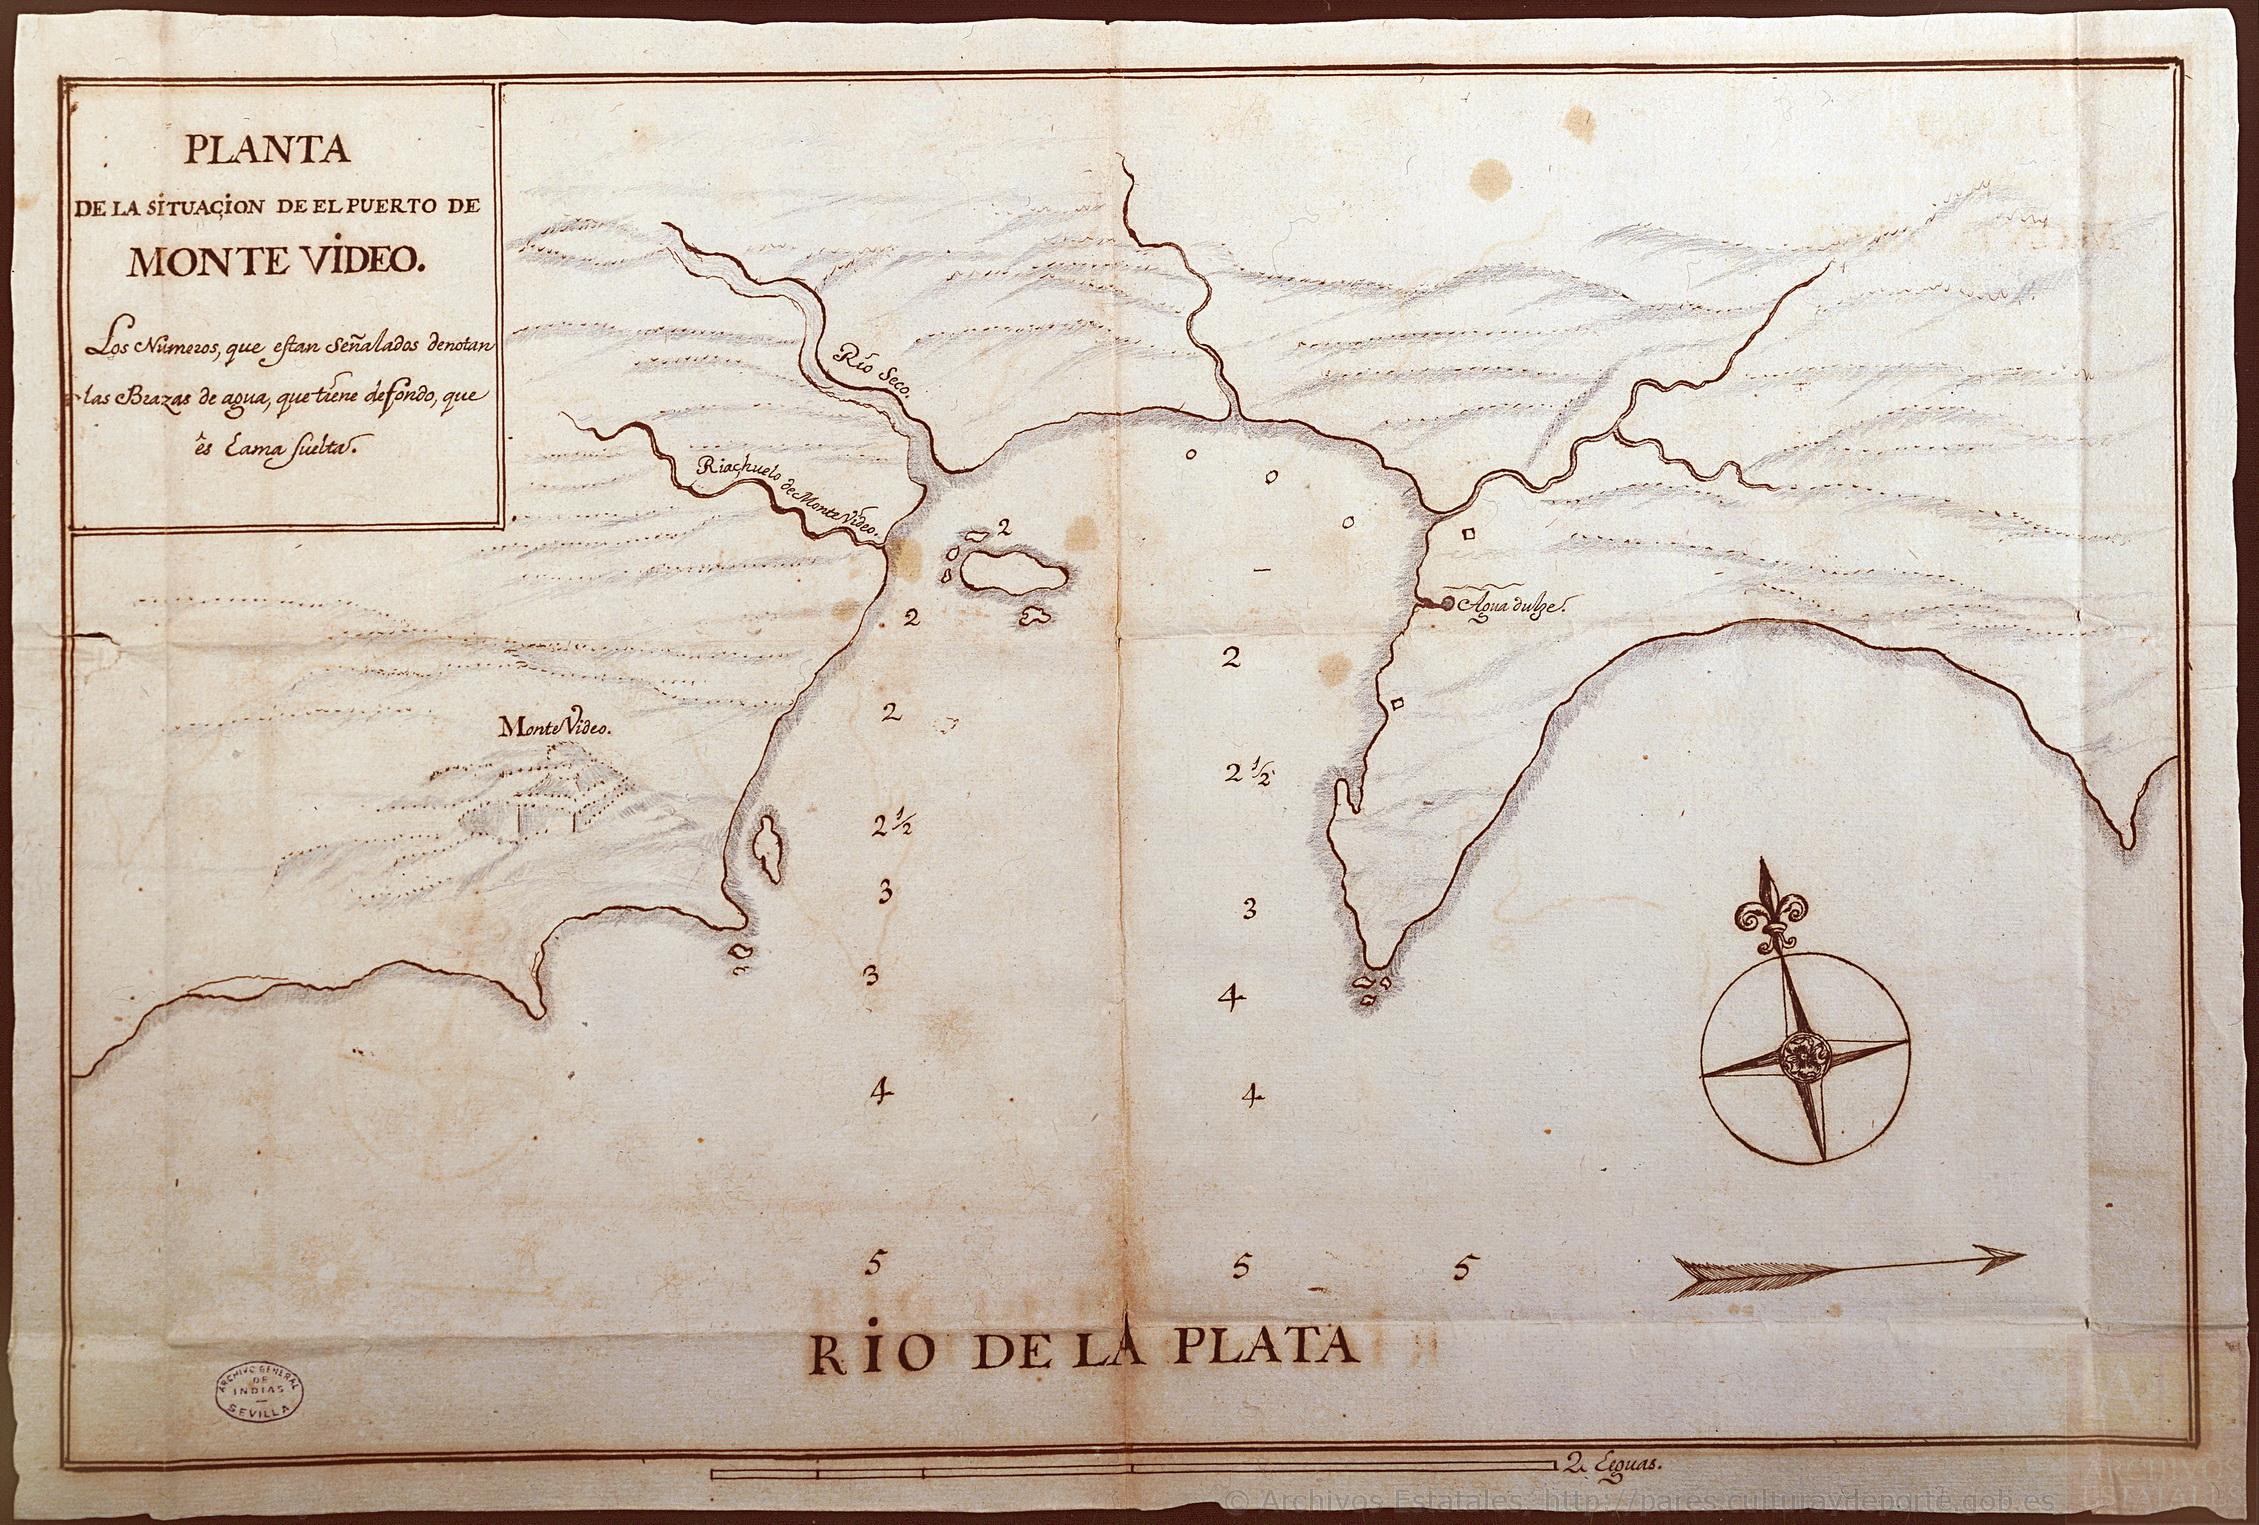 Planta de la situación del Puerto de Montevideo del “Archivo General de Indias”